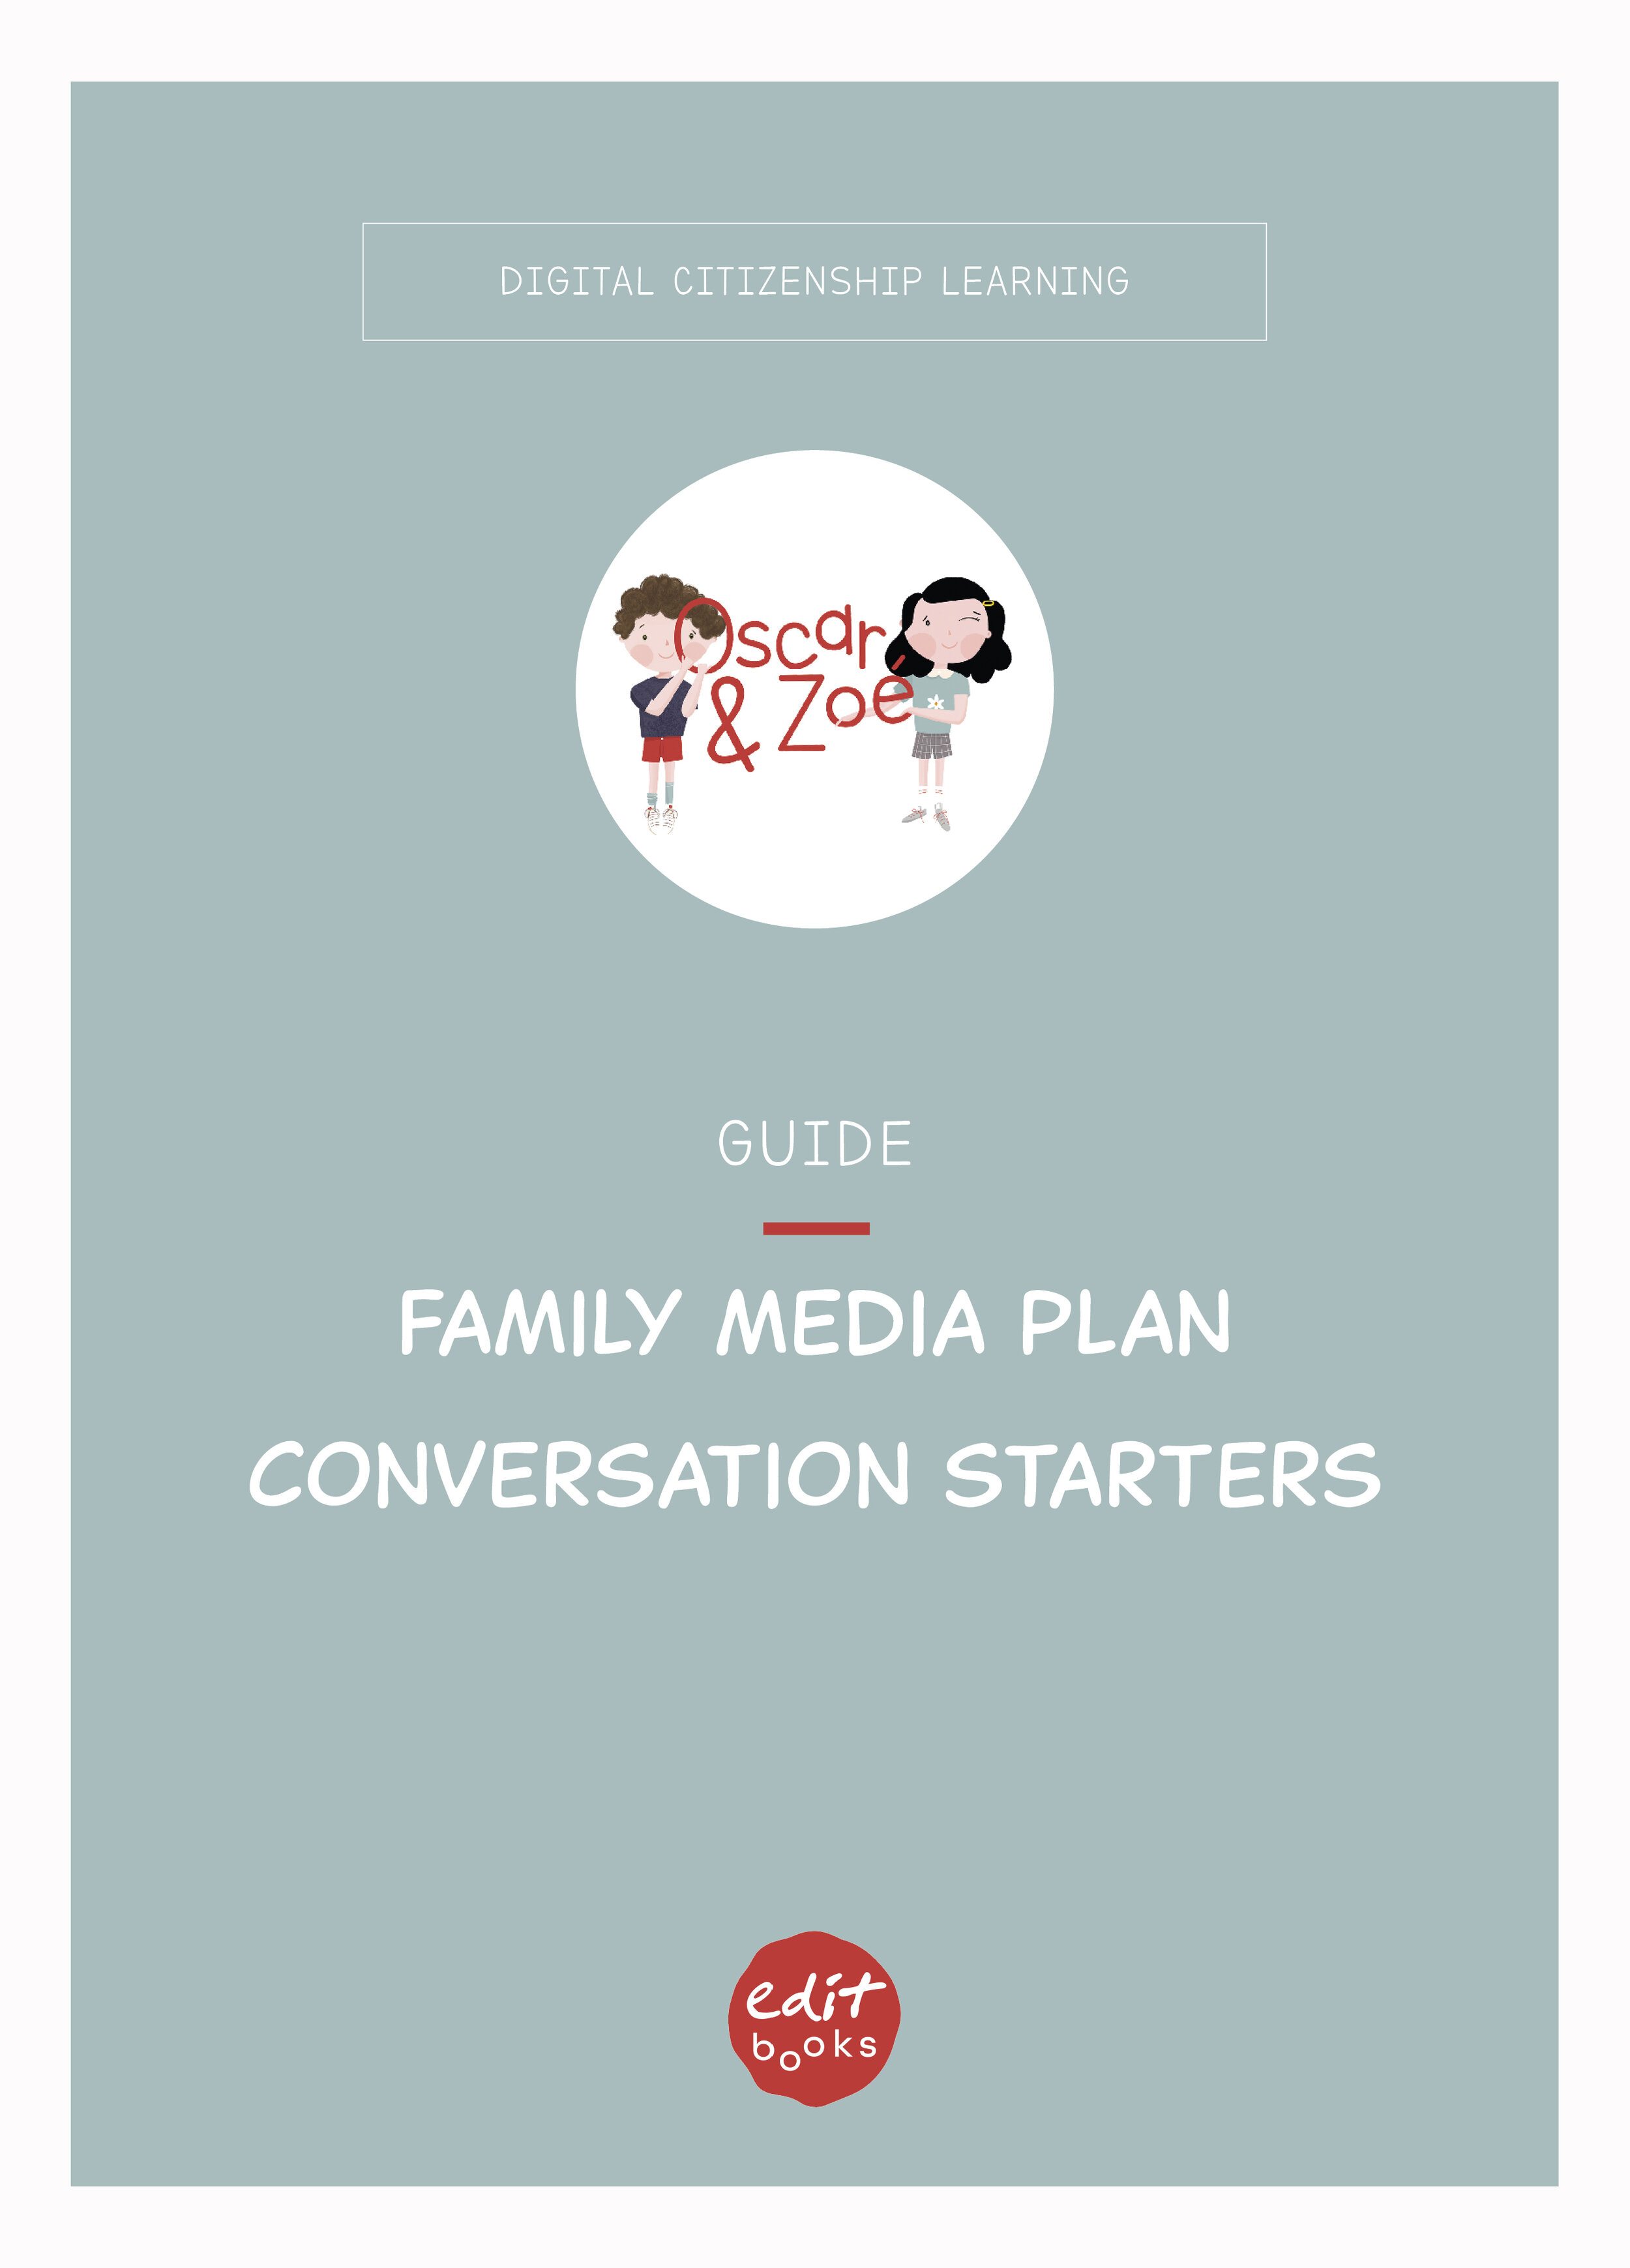 Family media plan